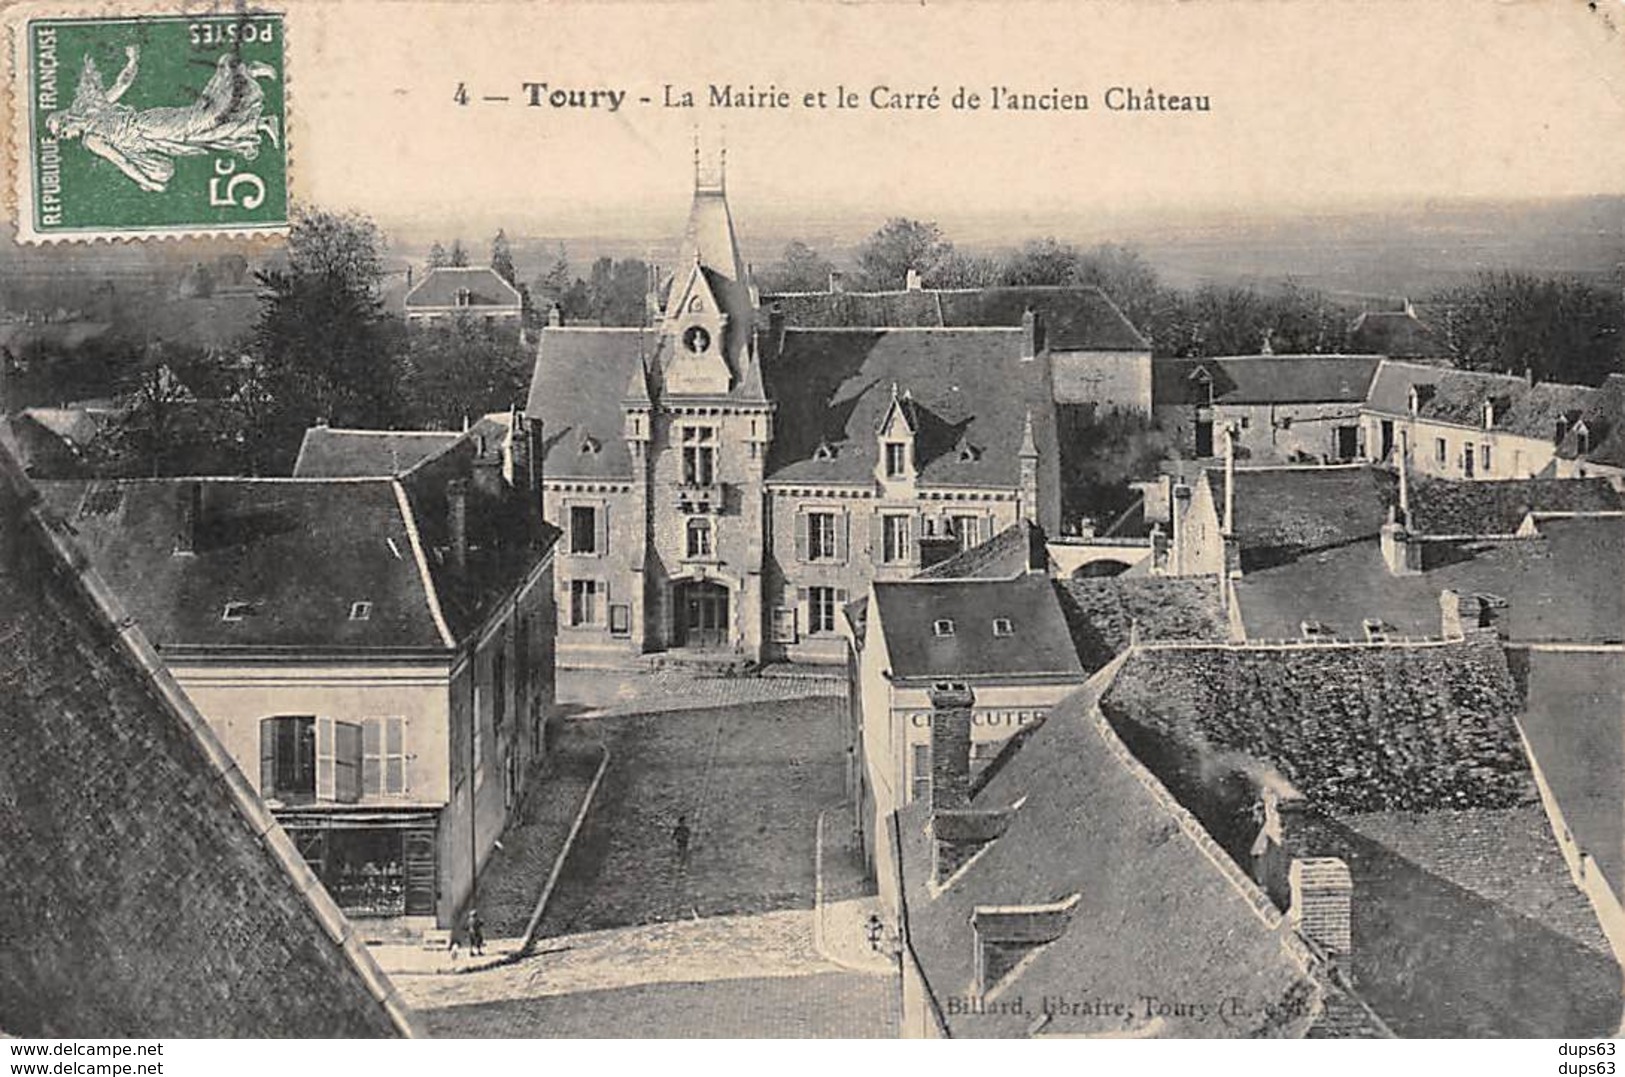 Accueil - Mairie d'Eymeux - Site officiel